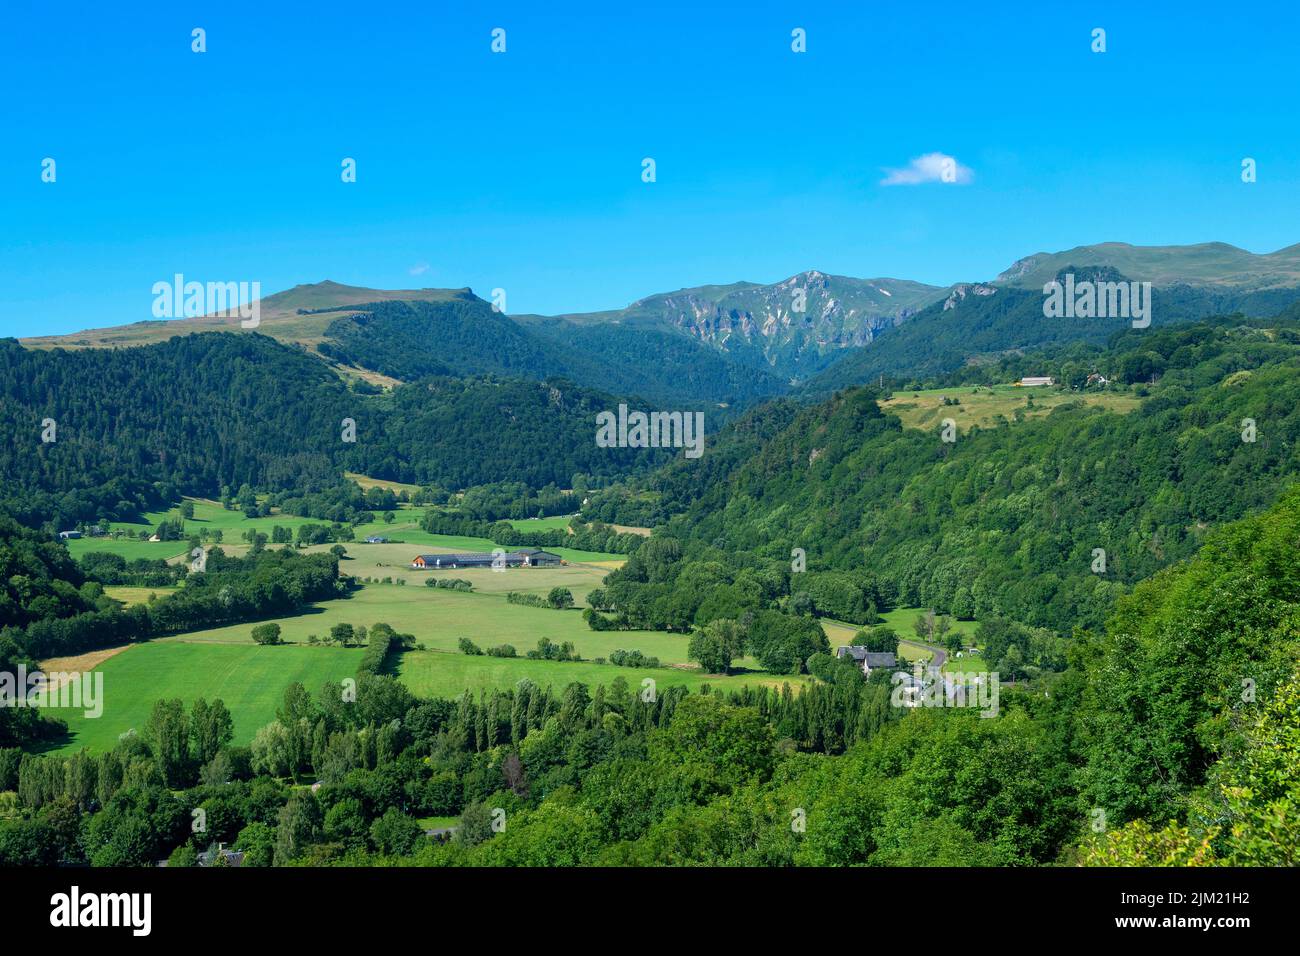 Vista del valle de Chaudefour en el Parque Natural de los Volcanes de Auvernia, departamento de Puy de Dome, Auvernia-Rhone-Alpes, Francia Foto de stock